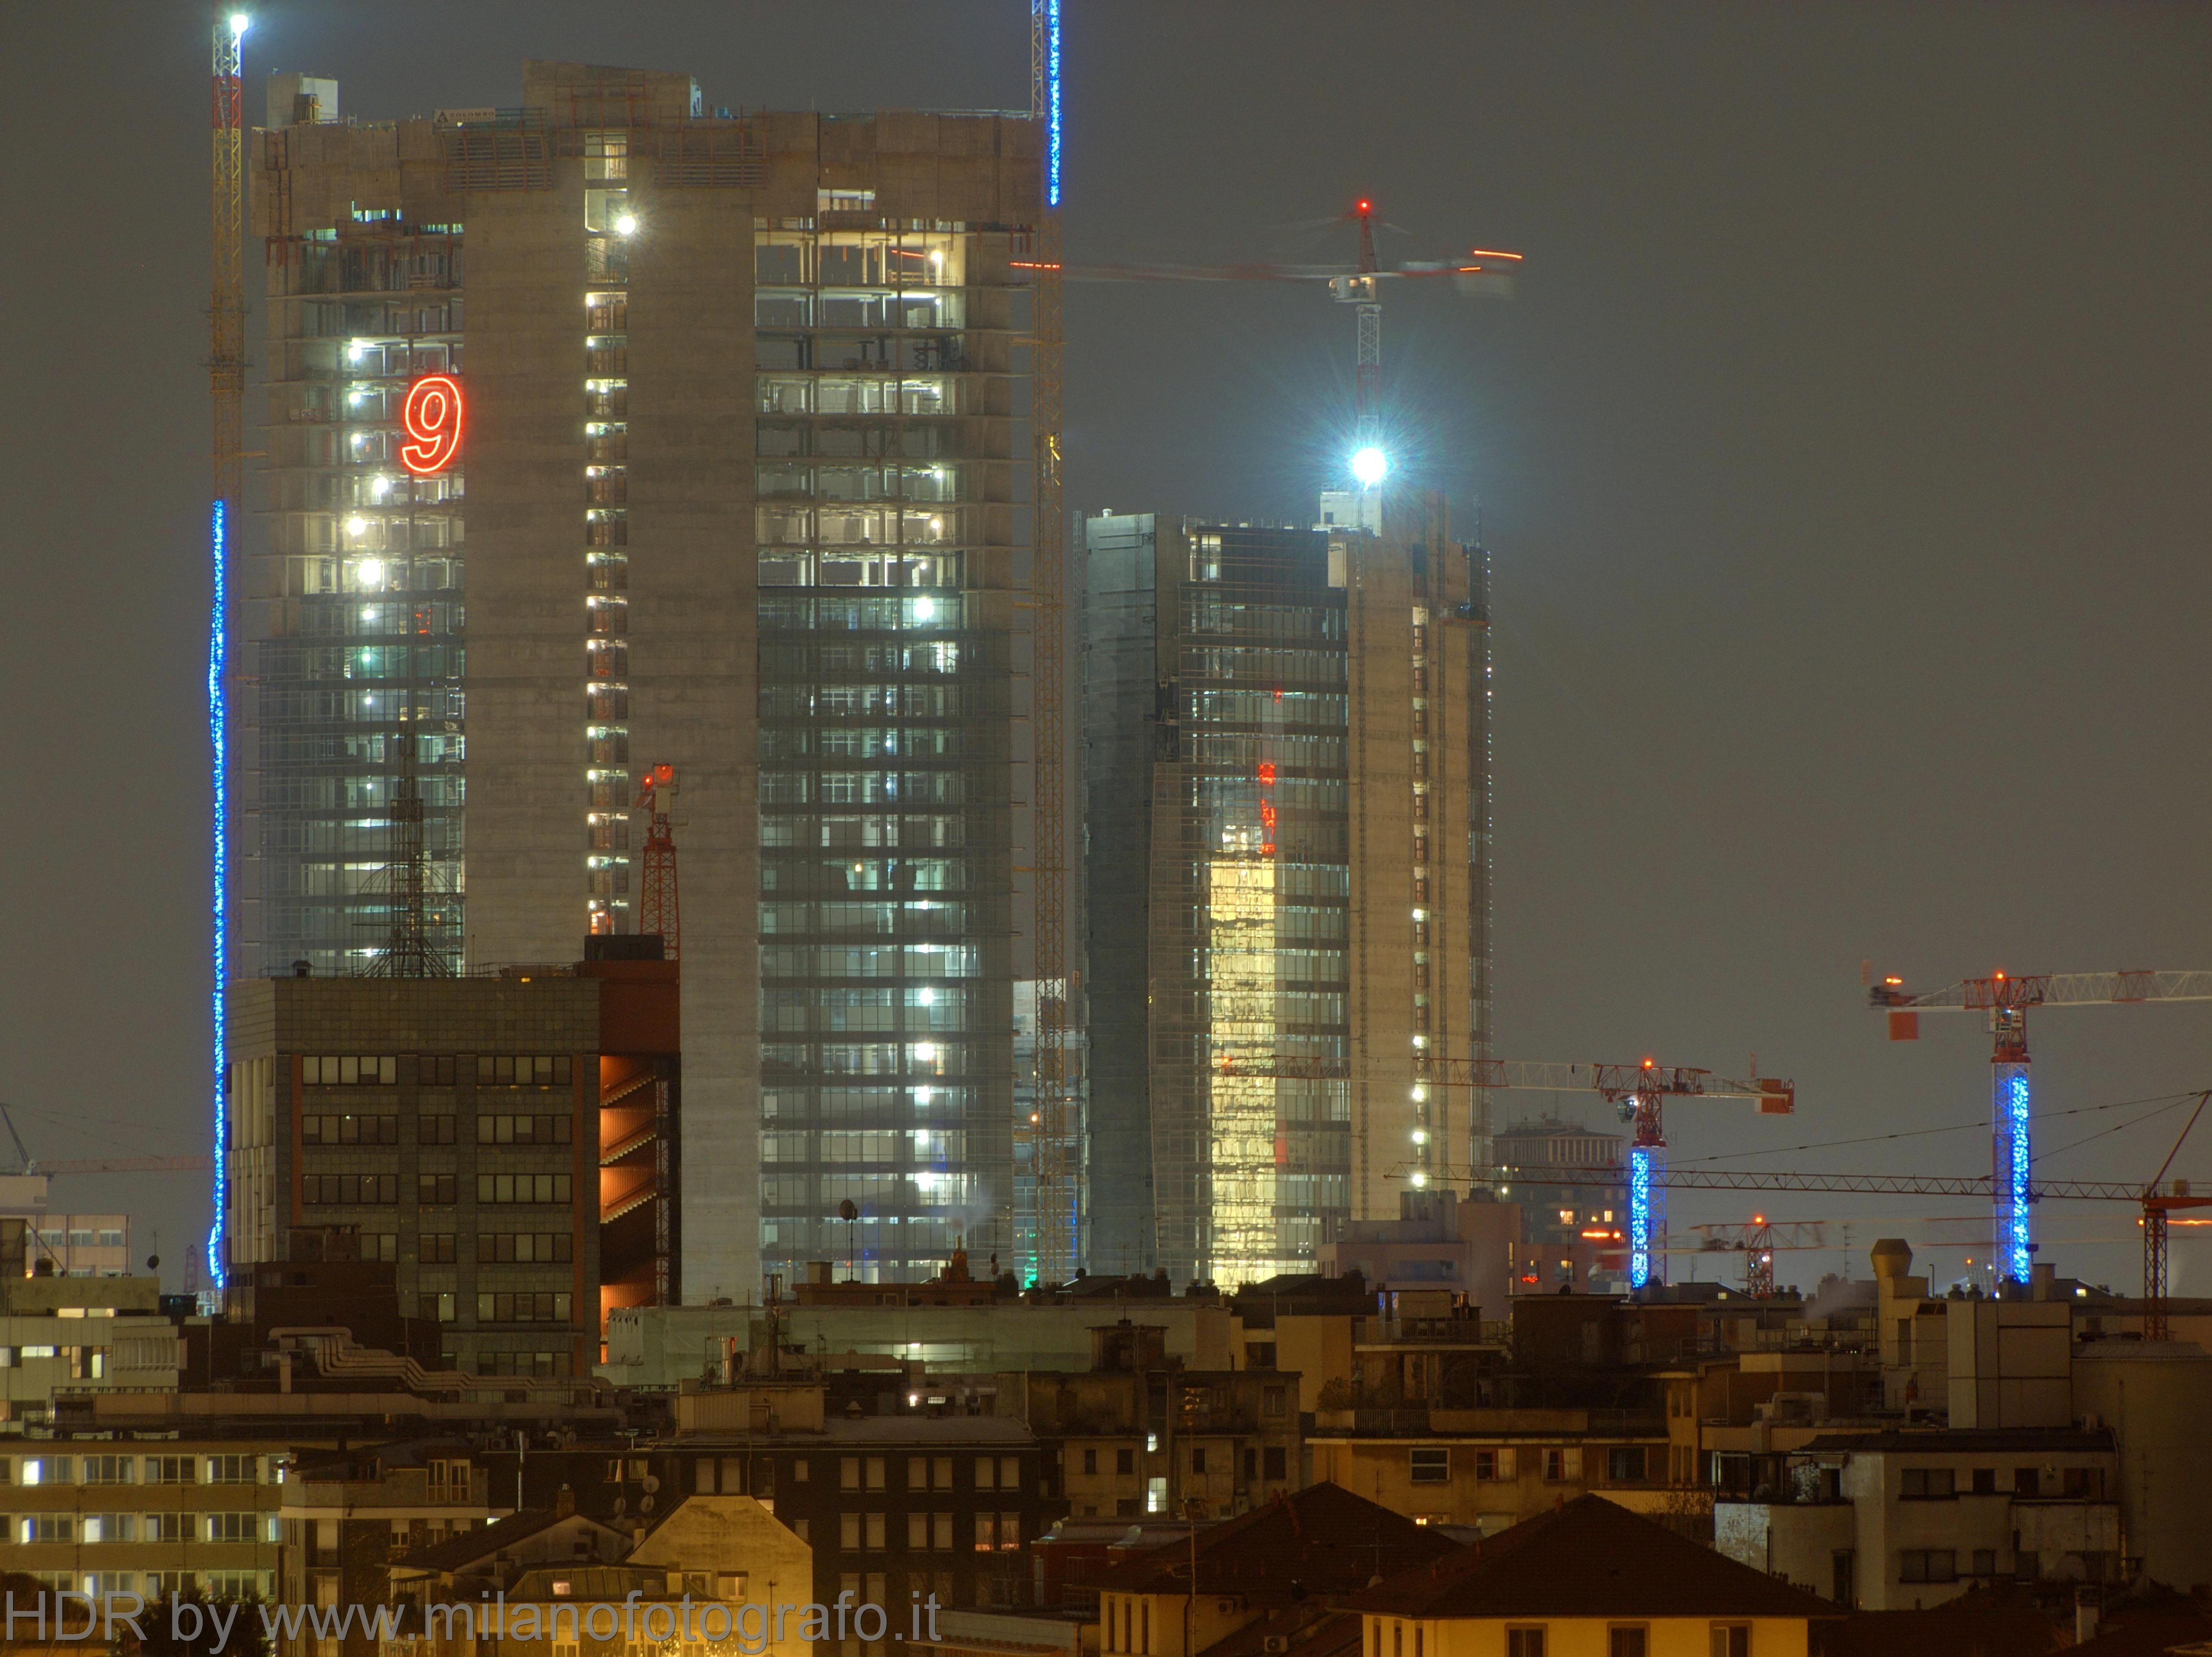 Milan (Italy): The new skyskrapers in the Garibaldi Varesine quarter - Milan (Italy)